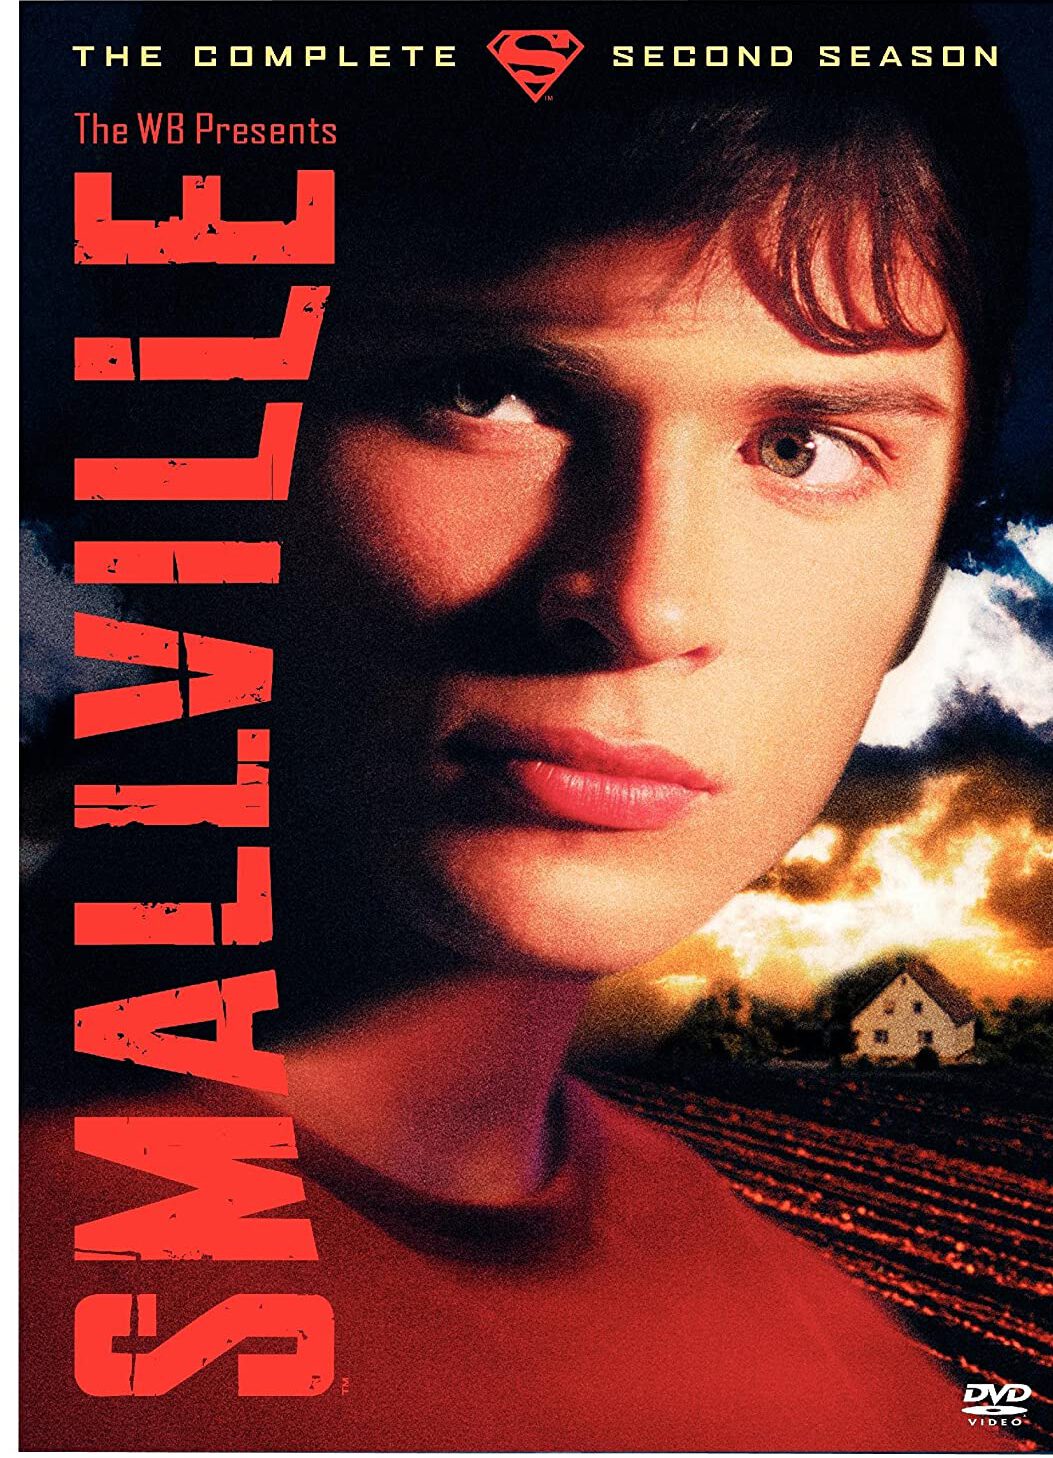 ดูหนังออนไลน์ฟรี Smallville สมอลวิลล์ หนุ่มน้อยซุปเปอร์แมน ปี 2 ตอนที่ 17